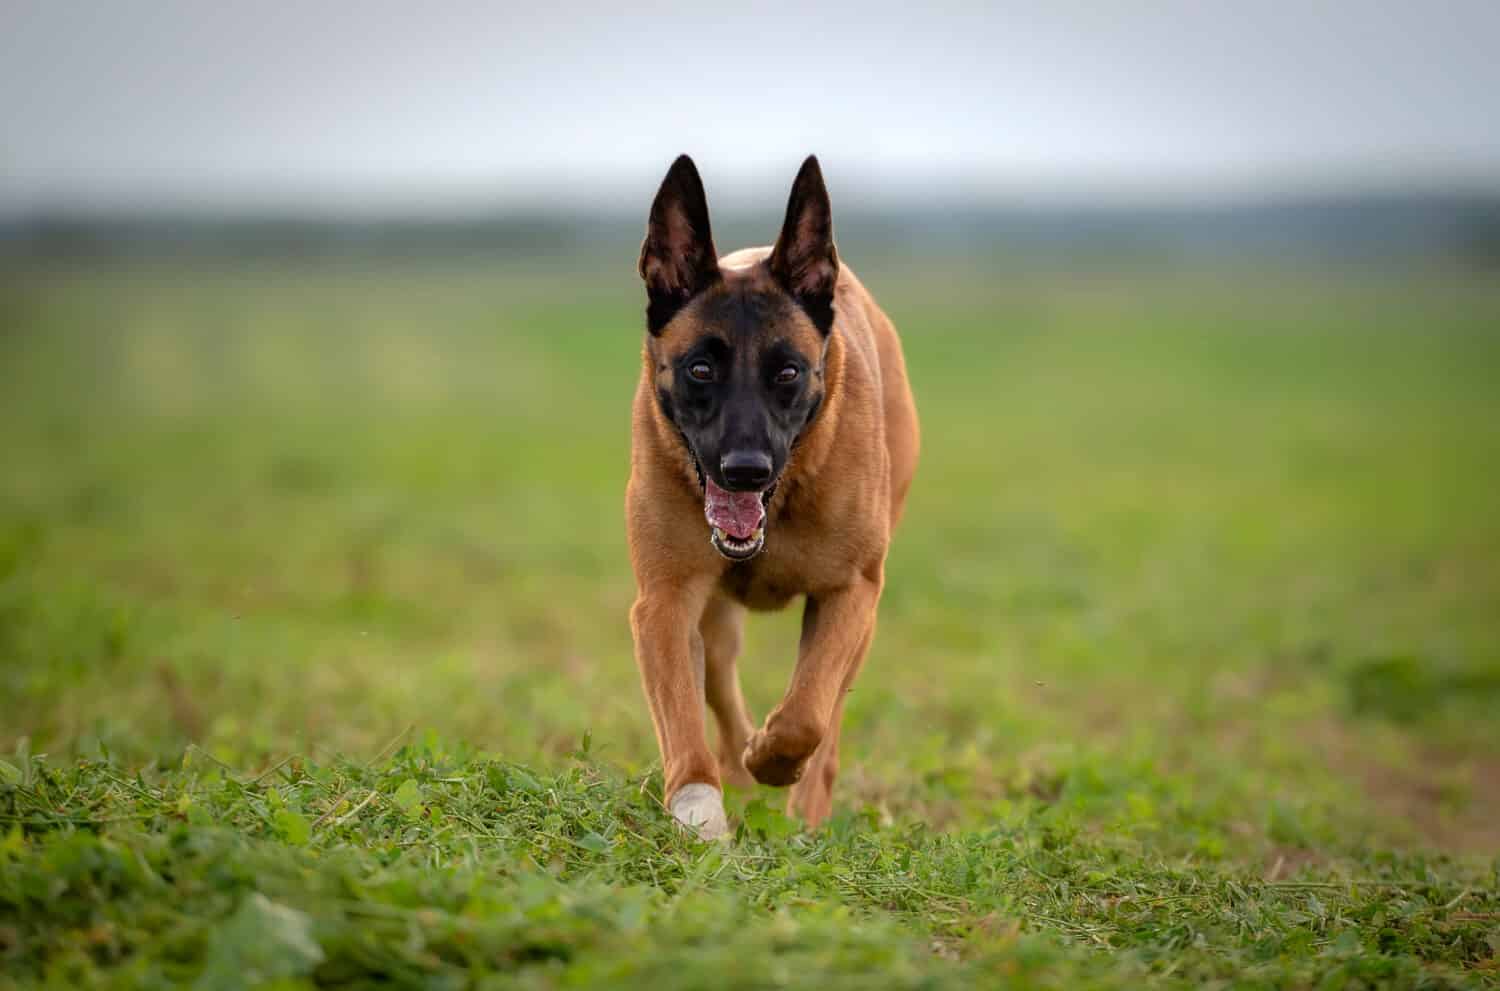 Belgian shepherd malinois dog wit bandeged paw running through green meadow 